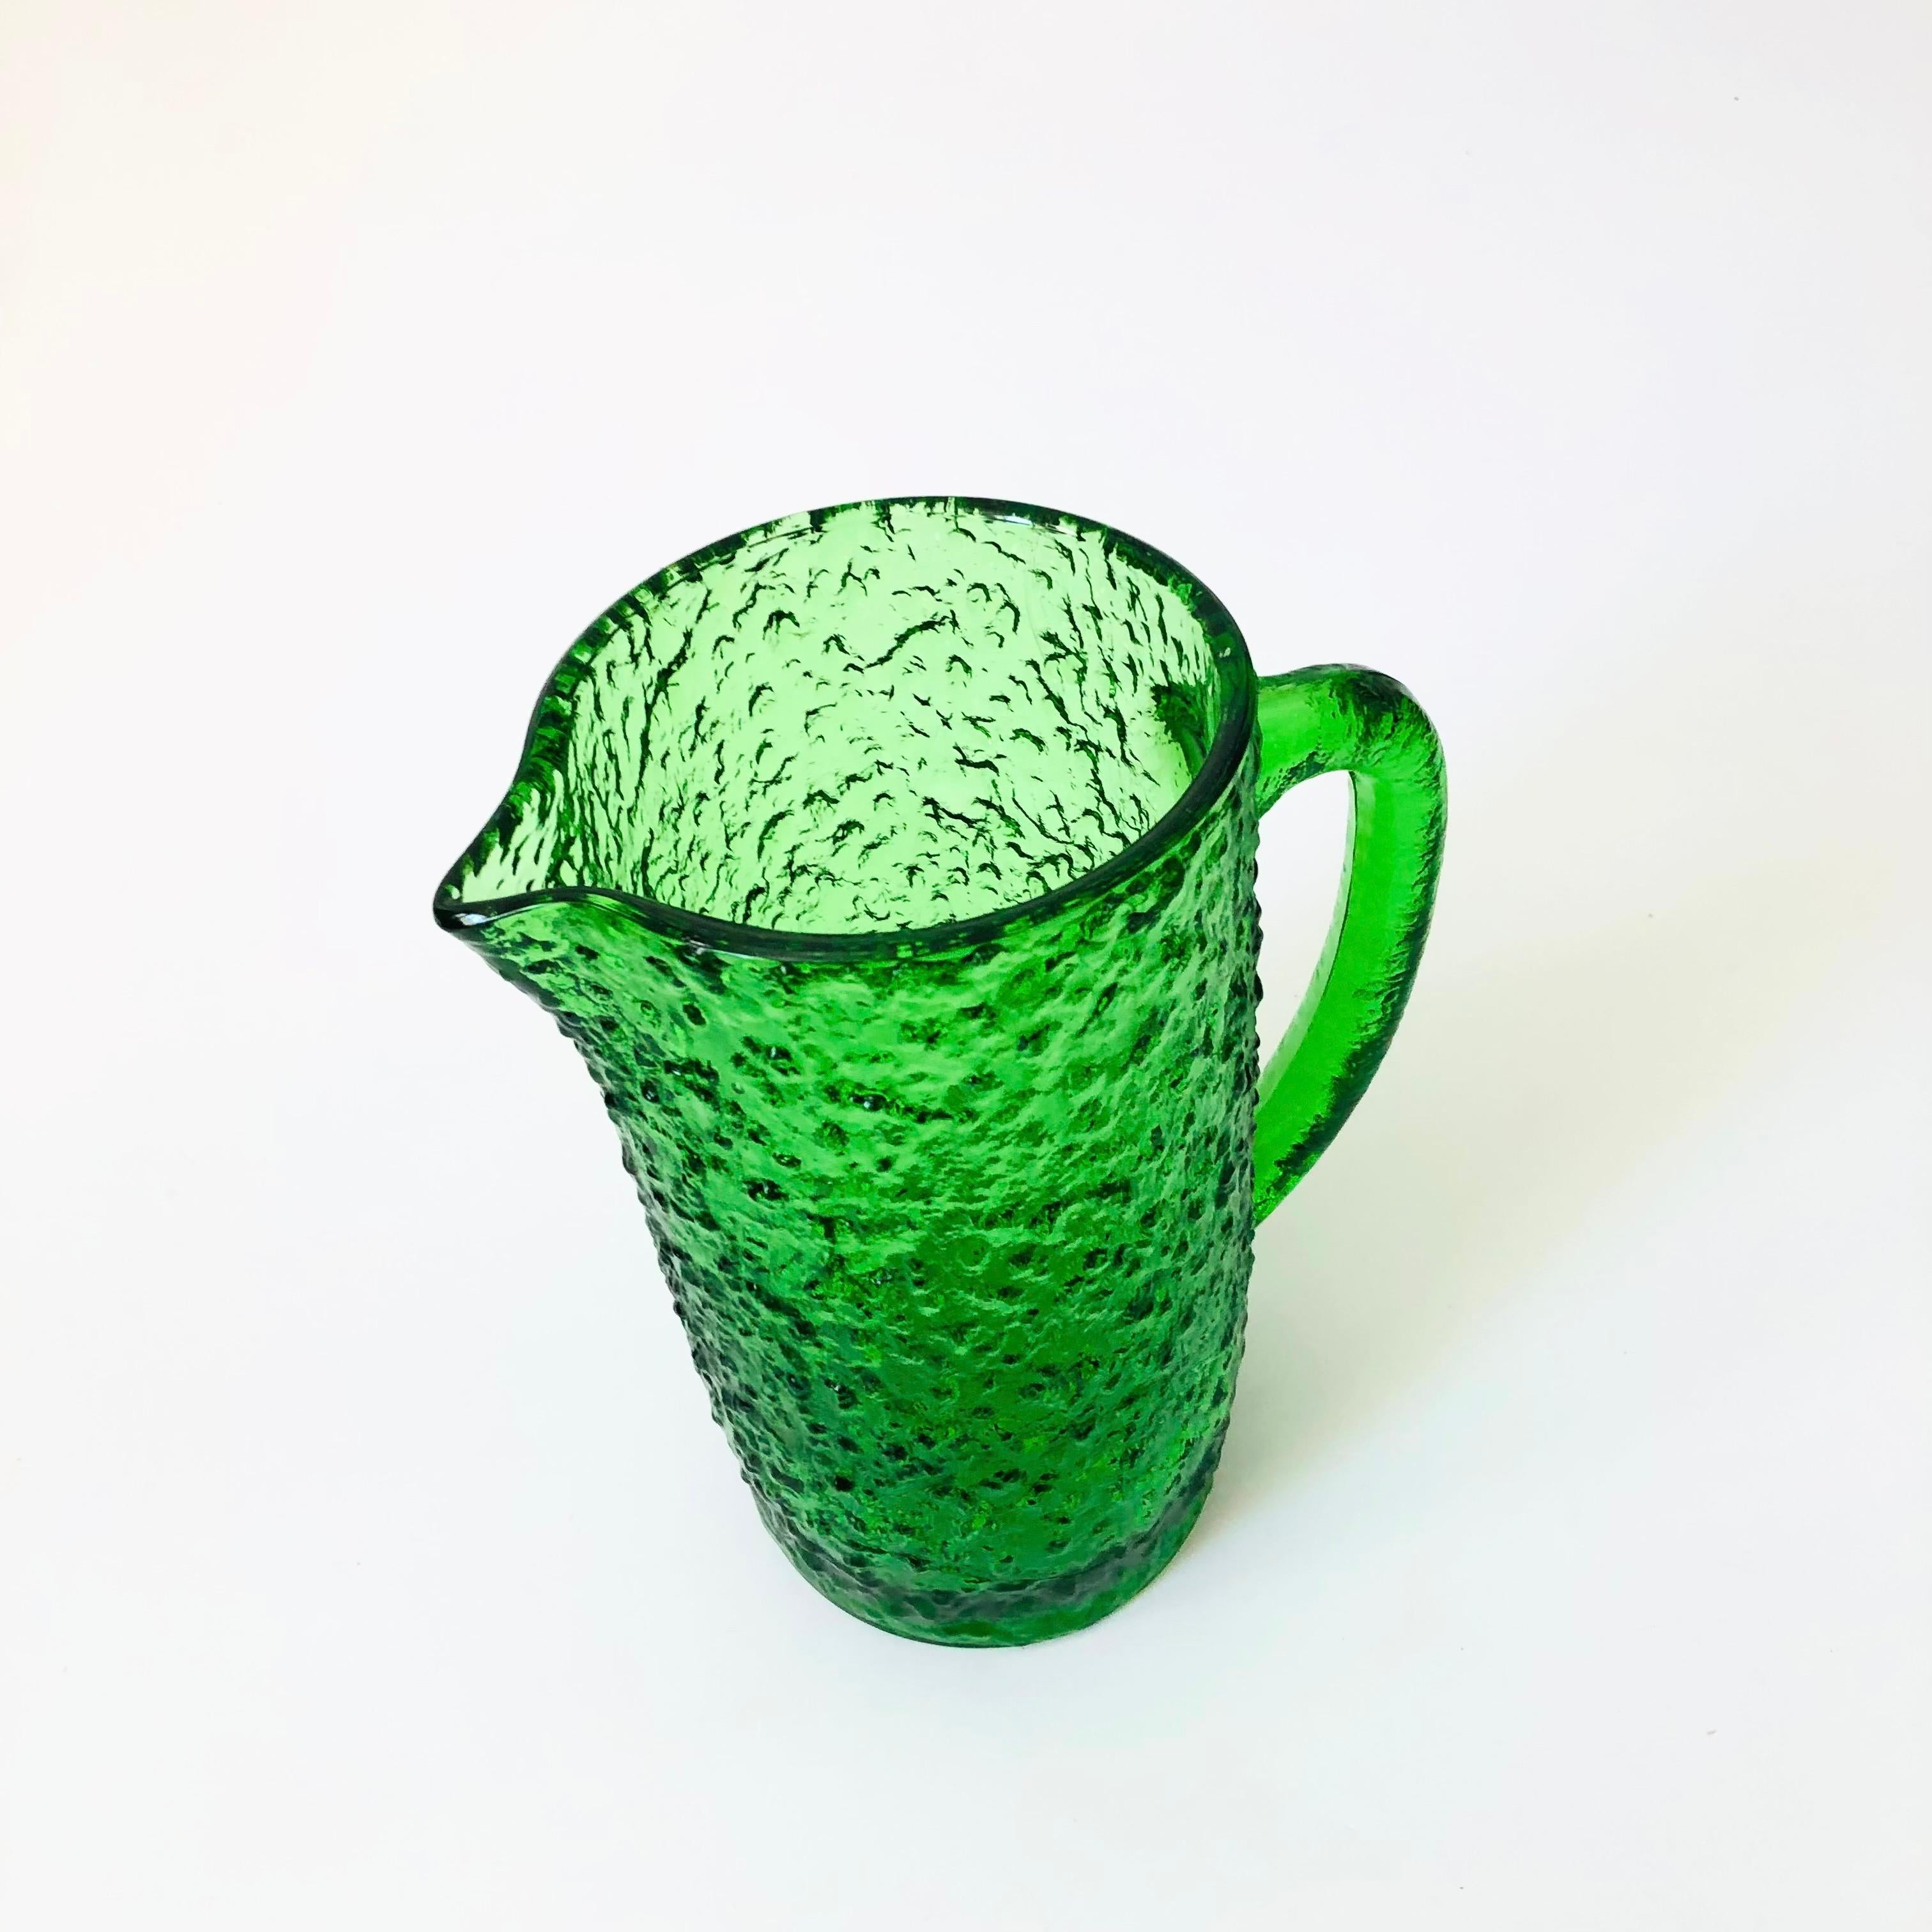 Un pichet vintage du milieu du siècle en verre texturé d'une couleur verte vibrante.

